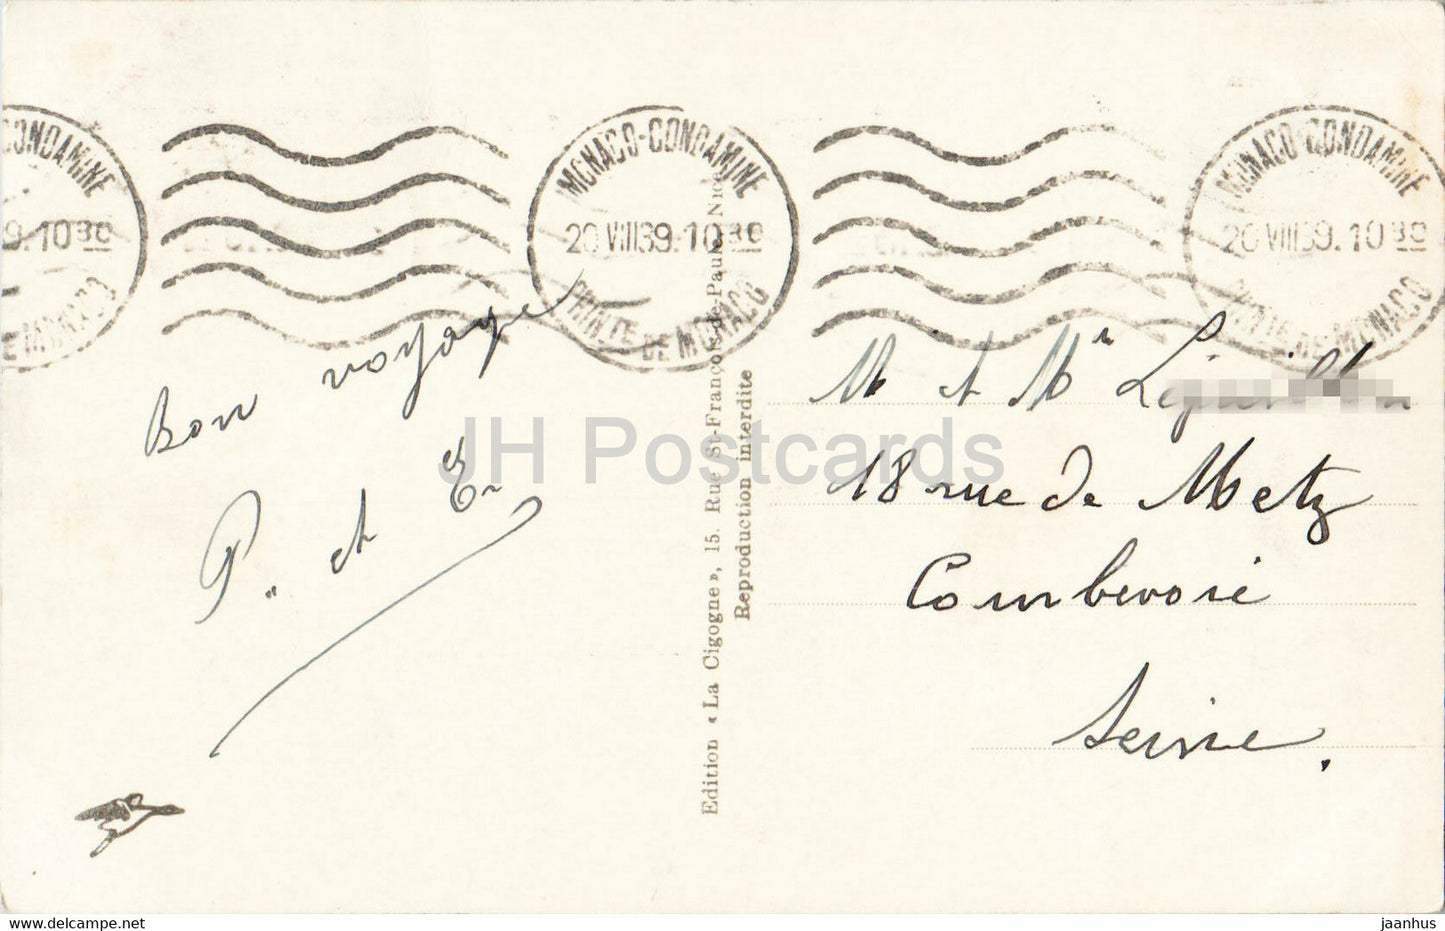 Monaco - Le Rocher - Vue sur Martin et l'Italie - 1495 - old postcard - 1939 - Monaco - used